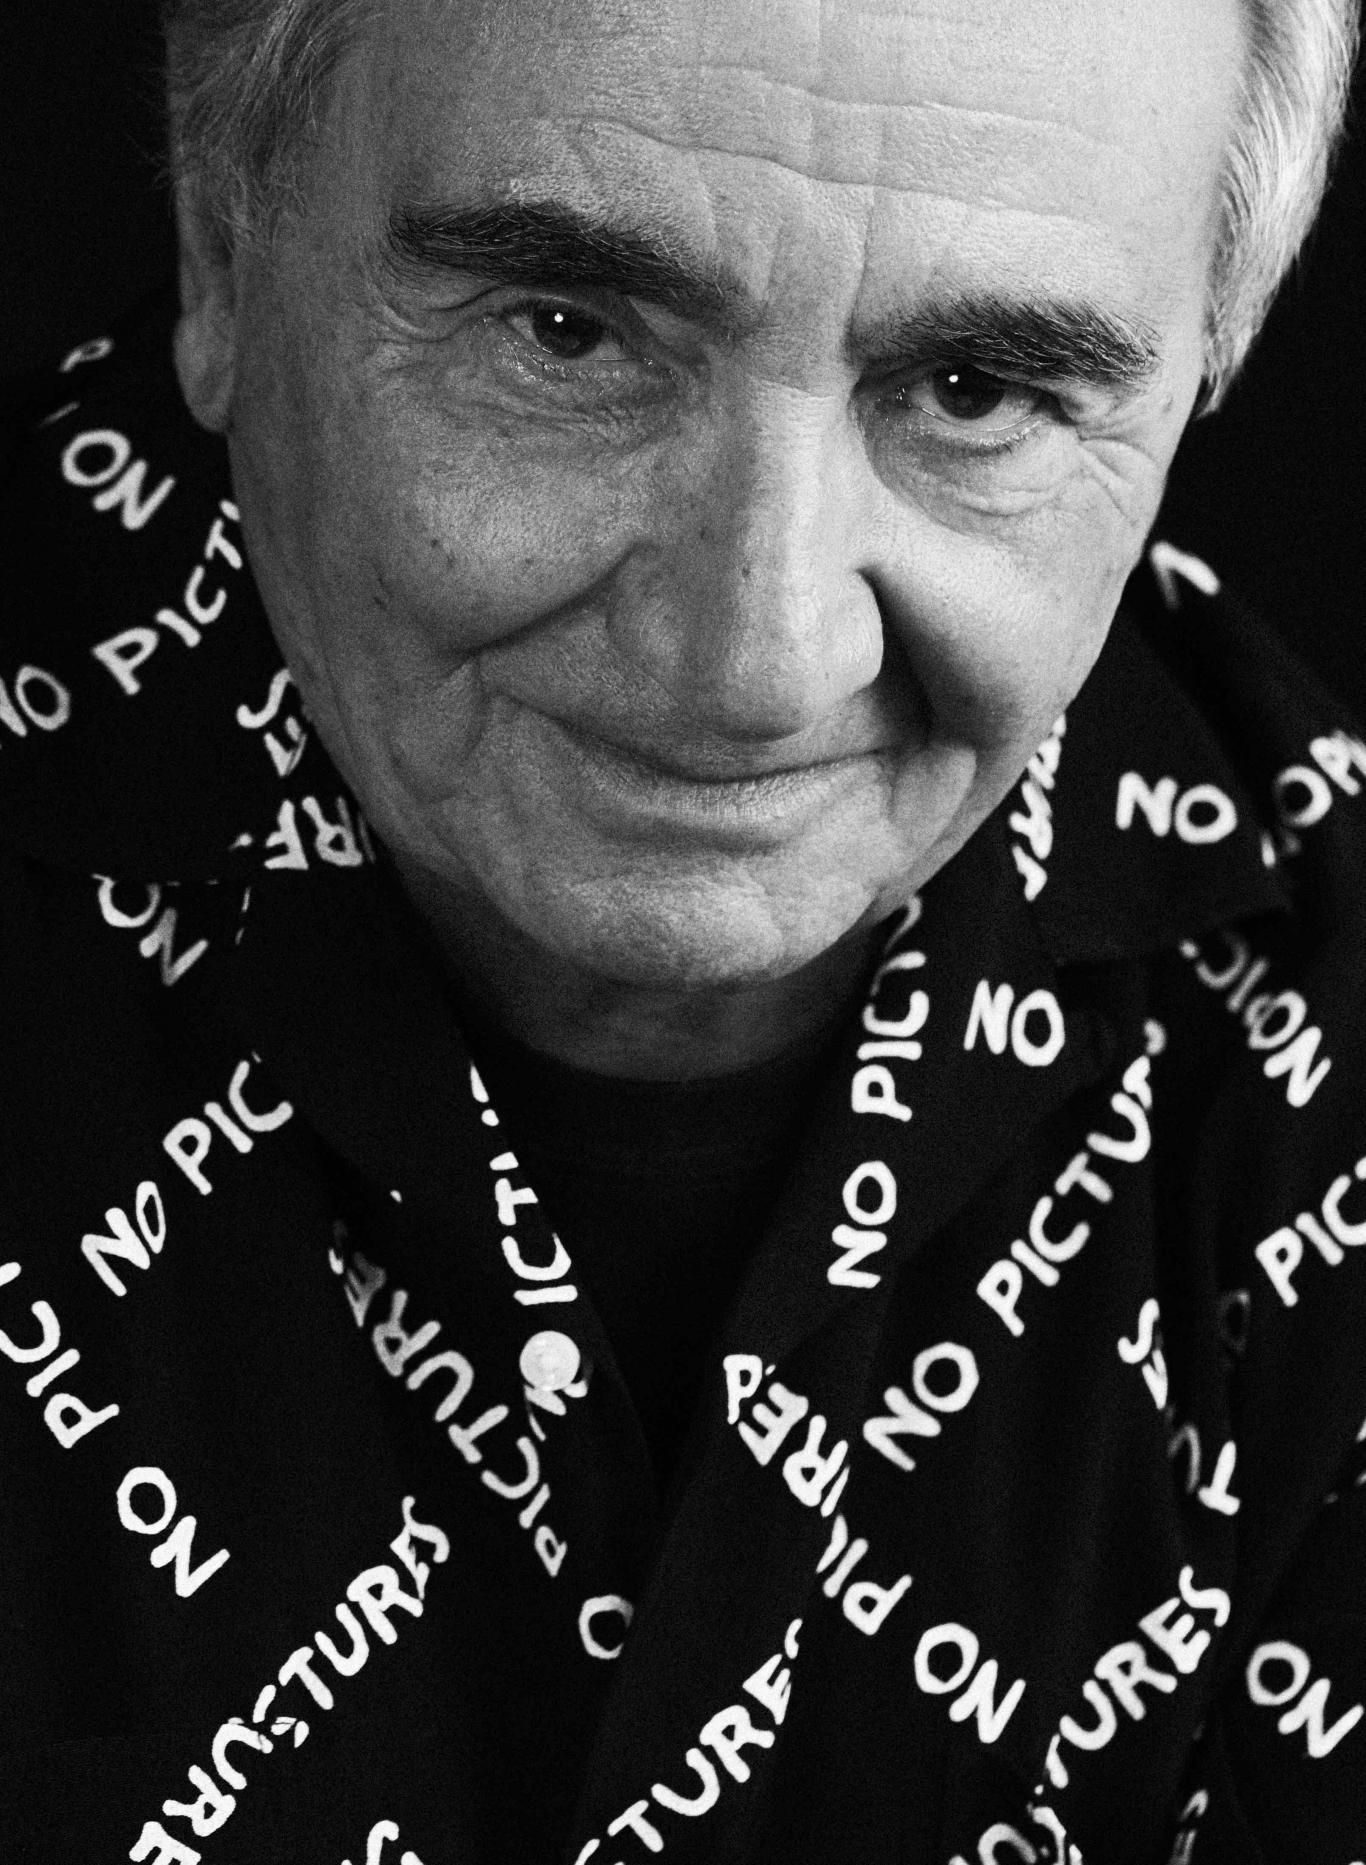 Retrato de un hombre mayor con camisa negra con letras blancas